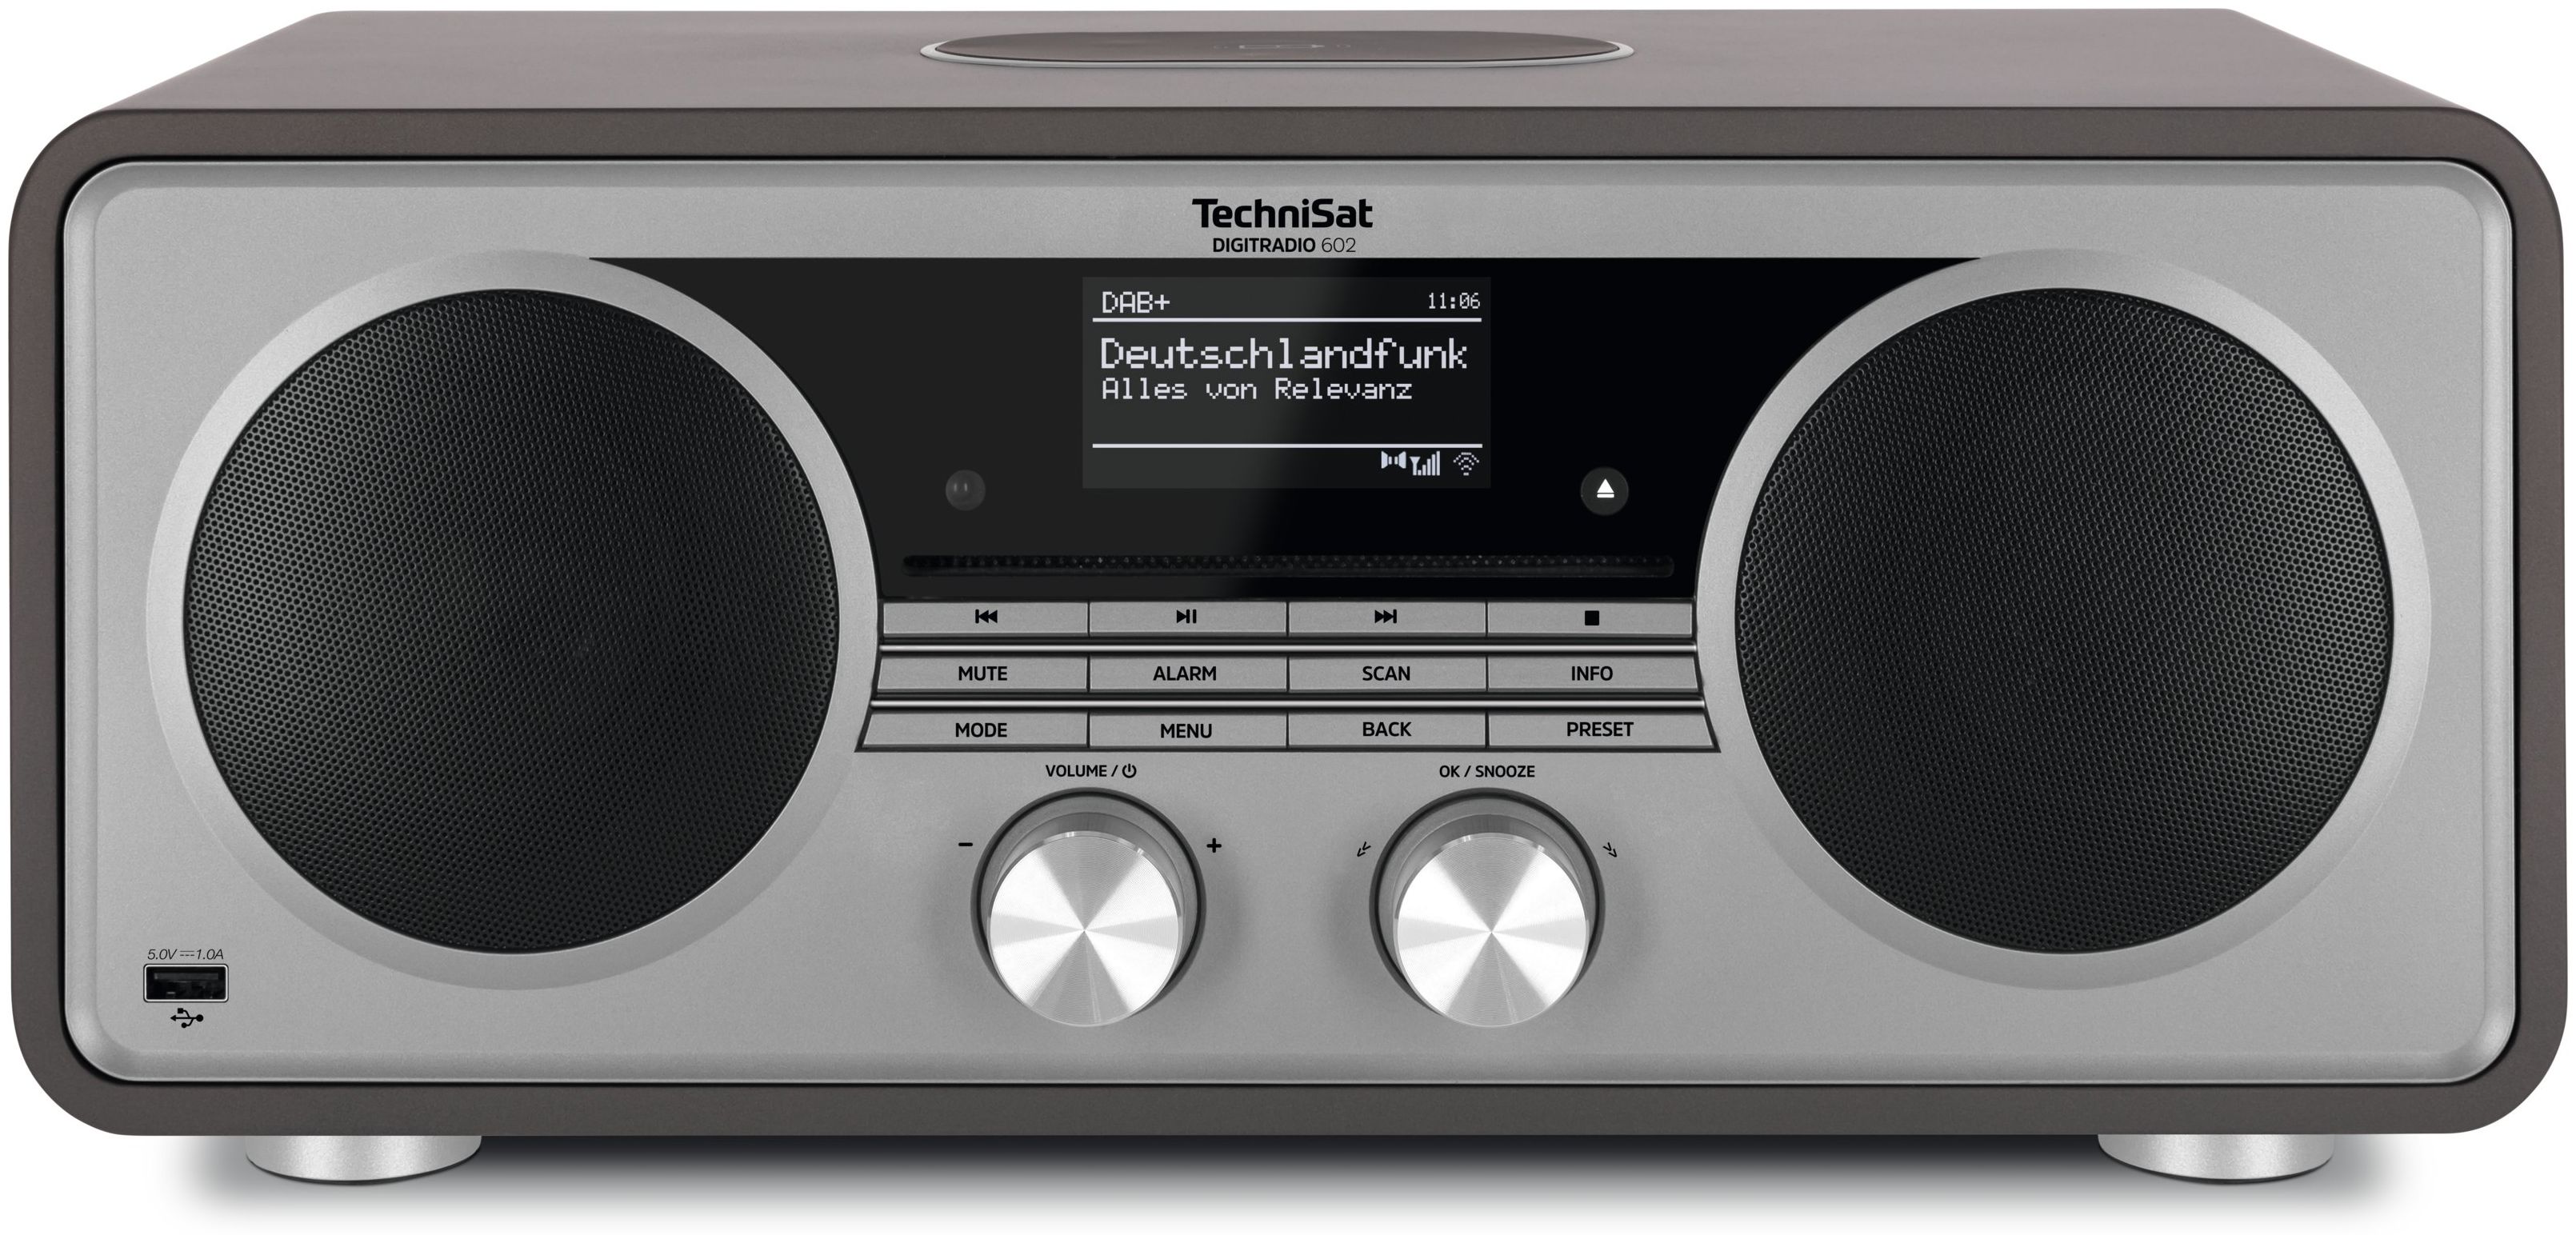 TechniSat DigitRadio 602 Bluetooth DAB+, expert Radio Technomarkt Silber) von FM (Anthrazit